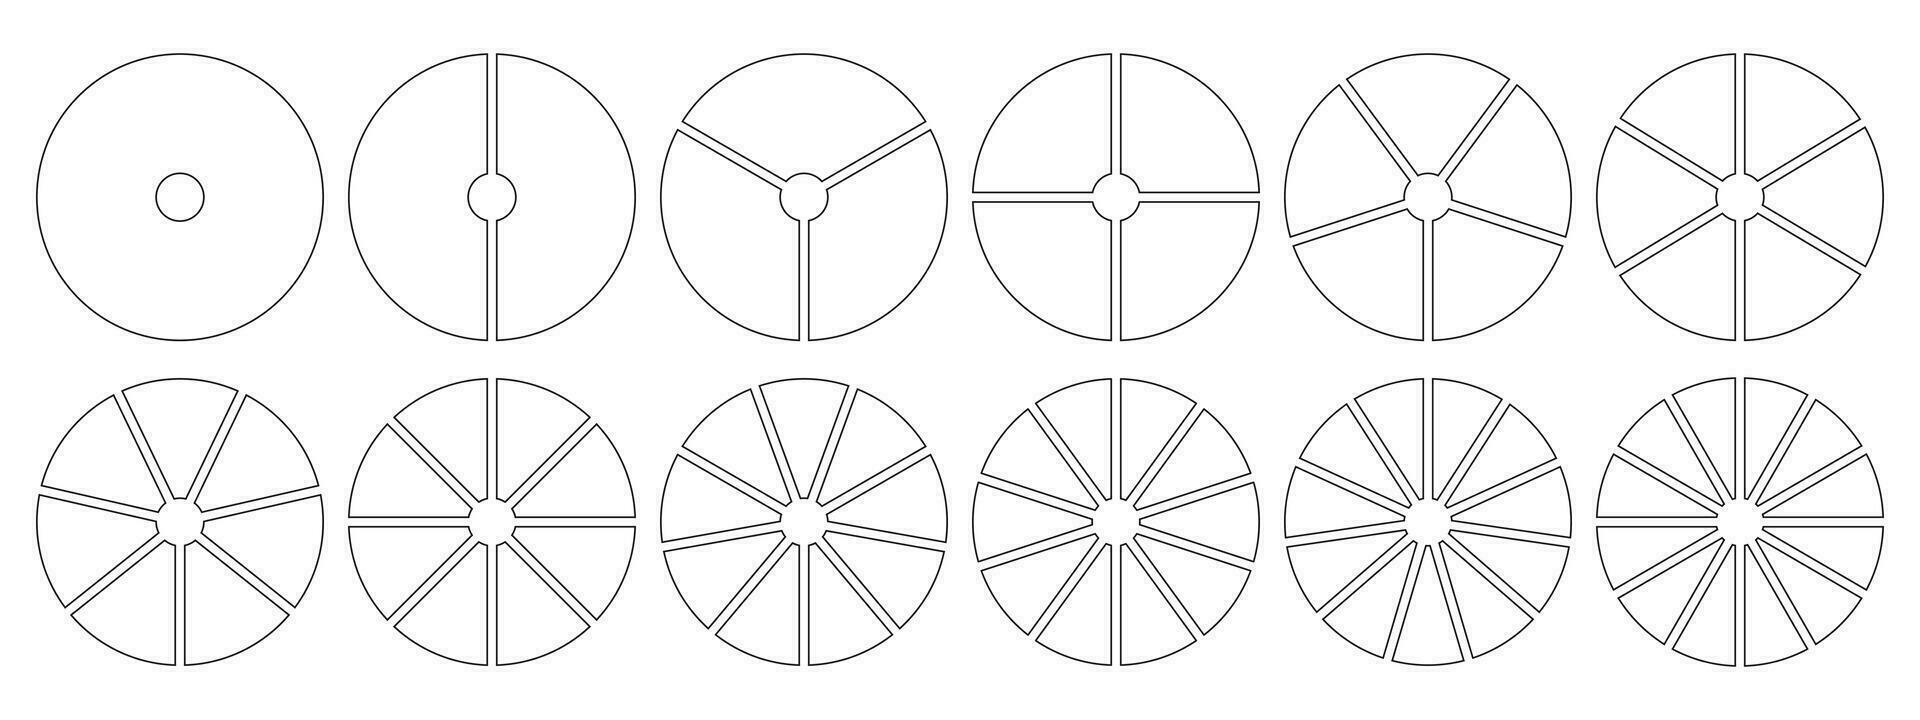 paj Diagram mallar. cirkel dividerat på 1, 2, 3, 4, 5, 6, 7, 8, 9, 10, 11, 12 likvärdig skivor. hjul diagram med ett, två, tre, fyra, fem, sex, sju, åtta, nio, tio, elva, tolv sektorer. vektor